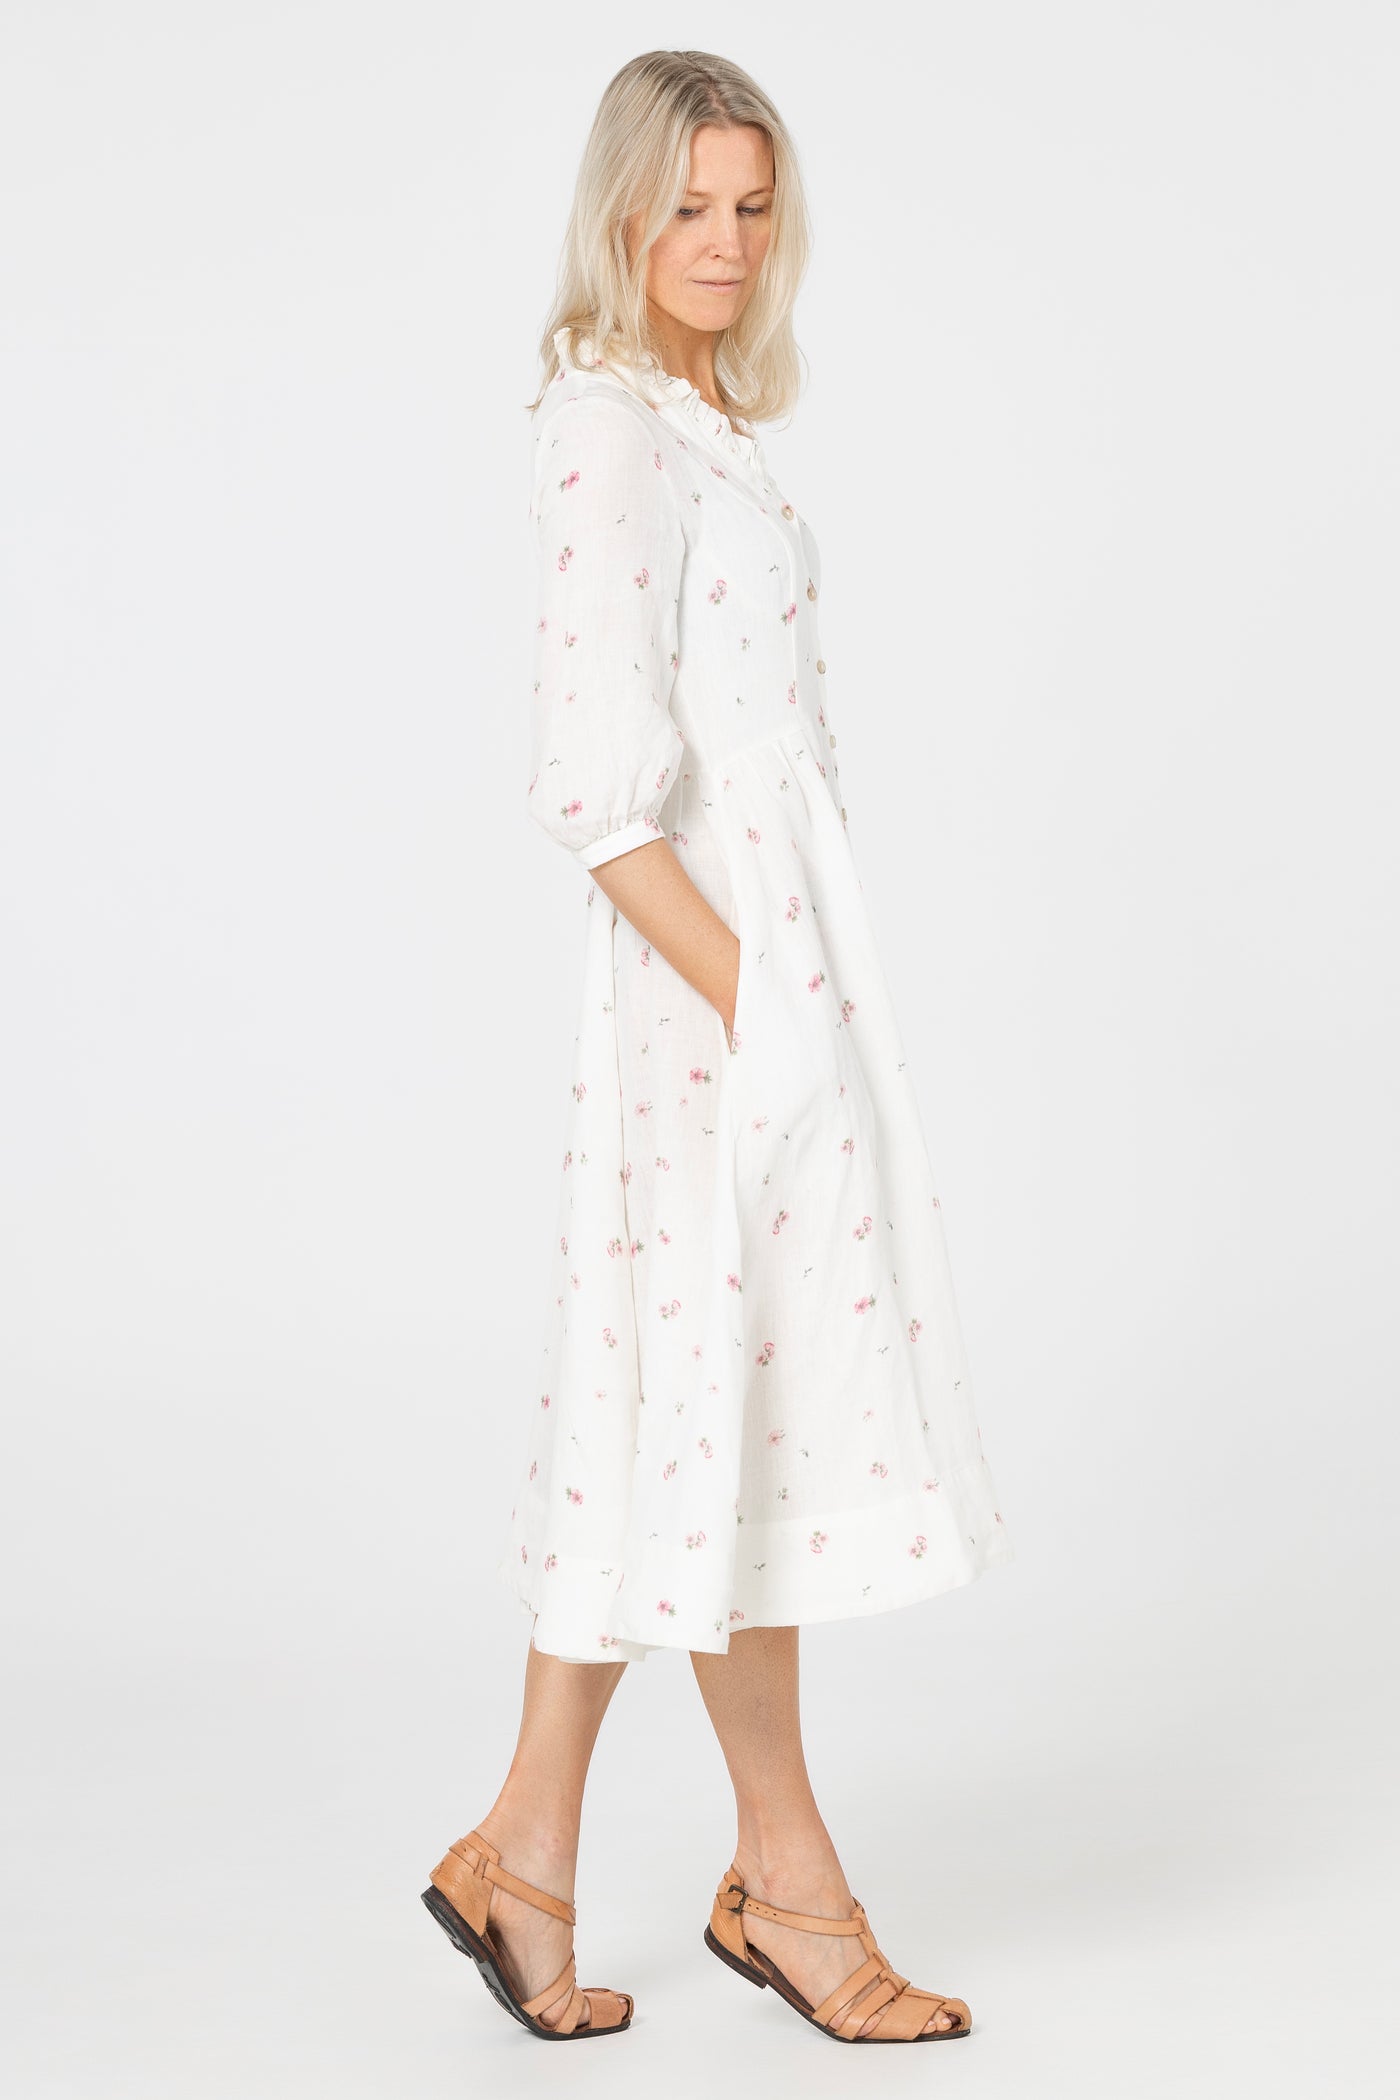 Ophelia Dress, 3/4 Sleeve, Apple Blossom